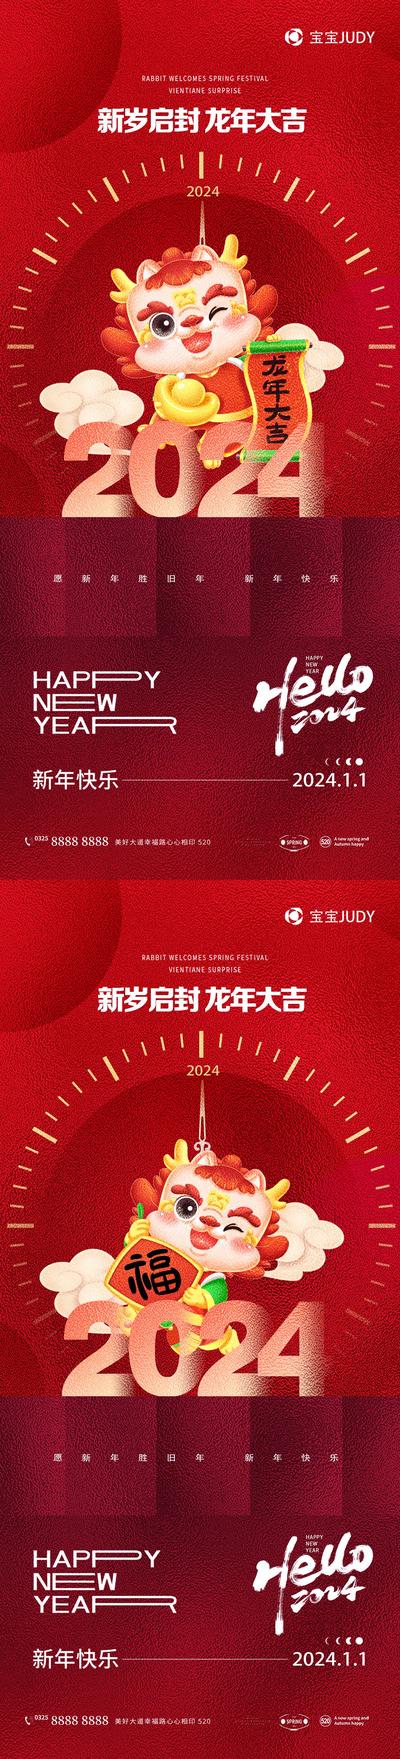 【南门网】广告 海报 节日 元旦 龙年 2024 插画 新年 春节 祝福 系列